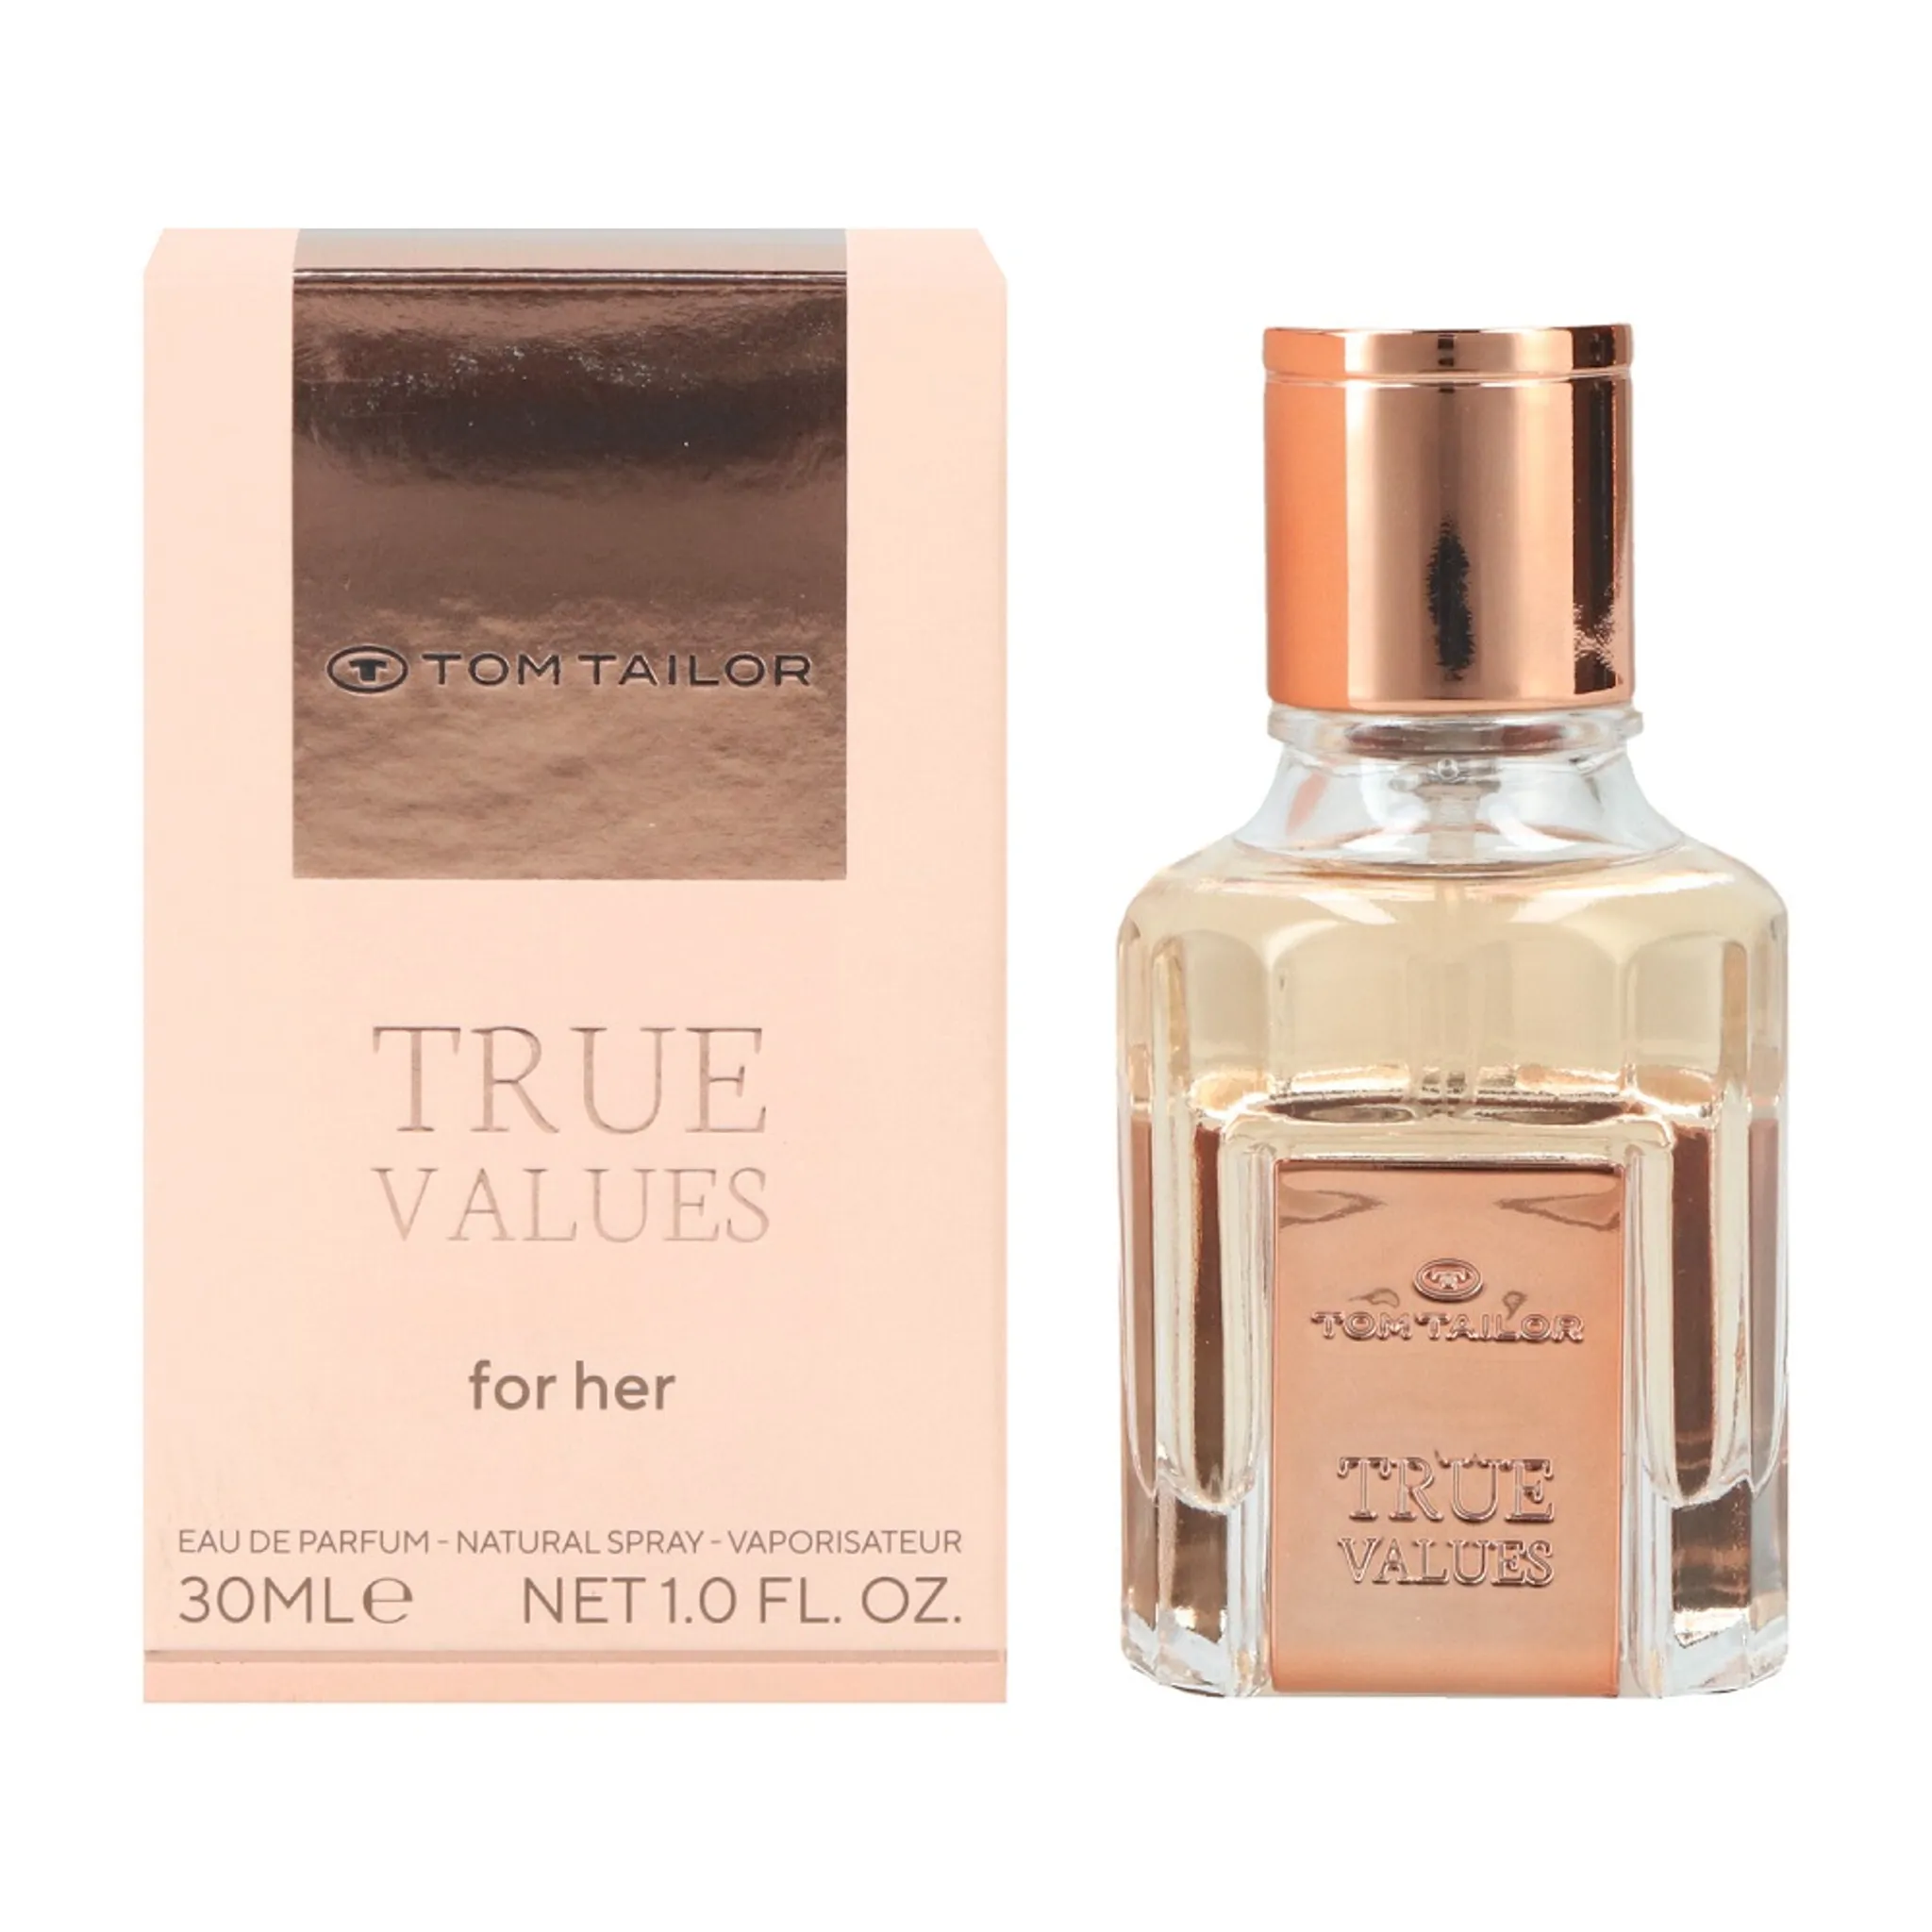 Tom Tailor True Values for Her Eau de Parfum | Eau de Toilette